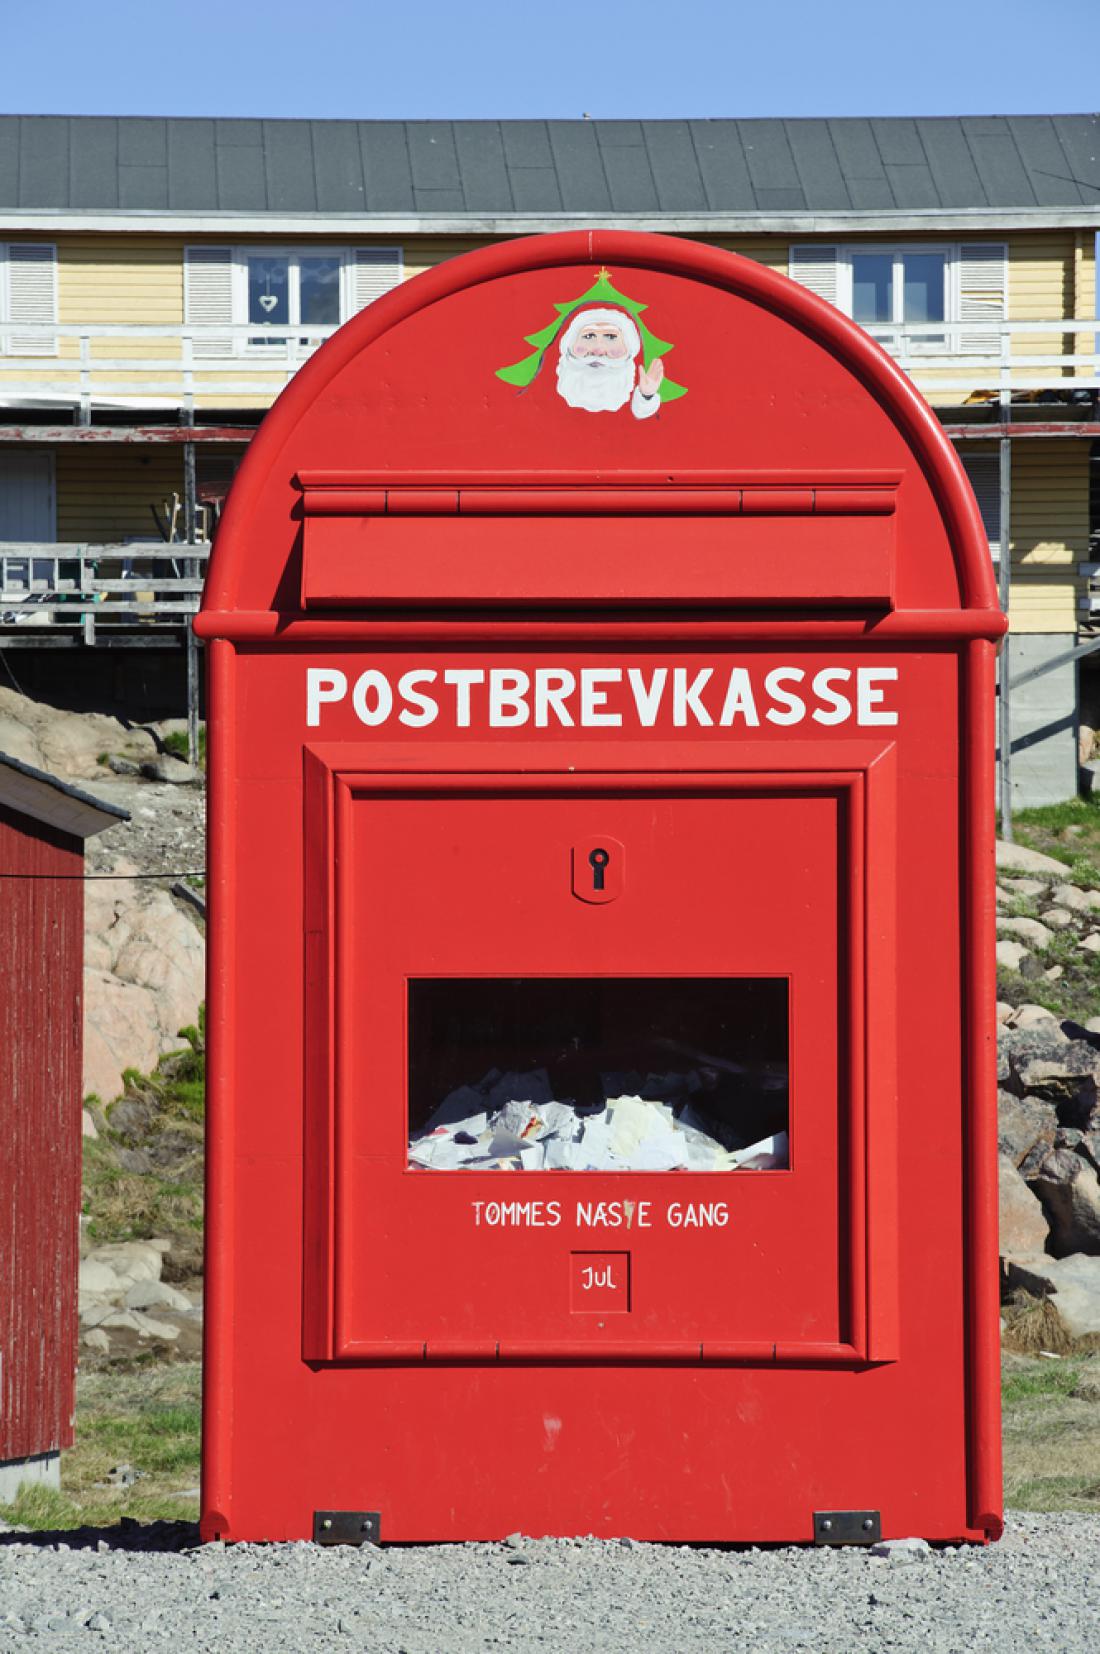 Božičkov poštni nabiralnik so na Grenlandiji preselili bližje šoli, kjer na pisma odgovarjajo učenci. 